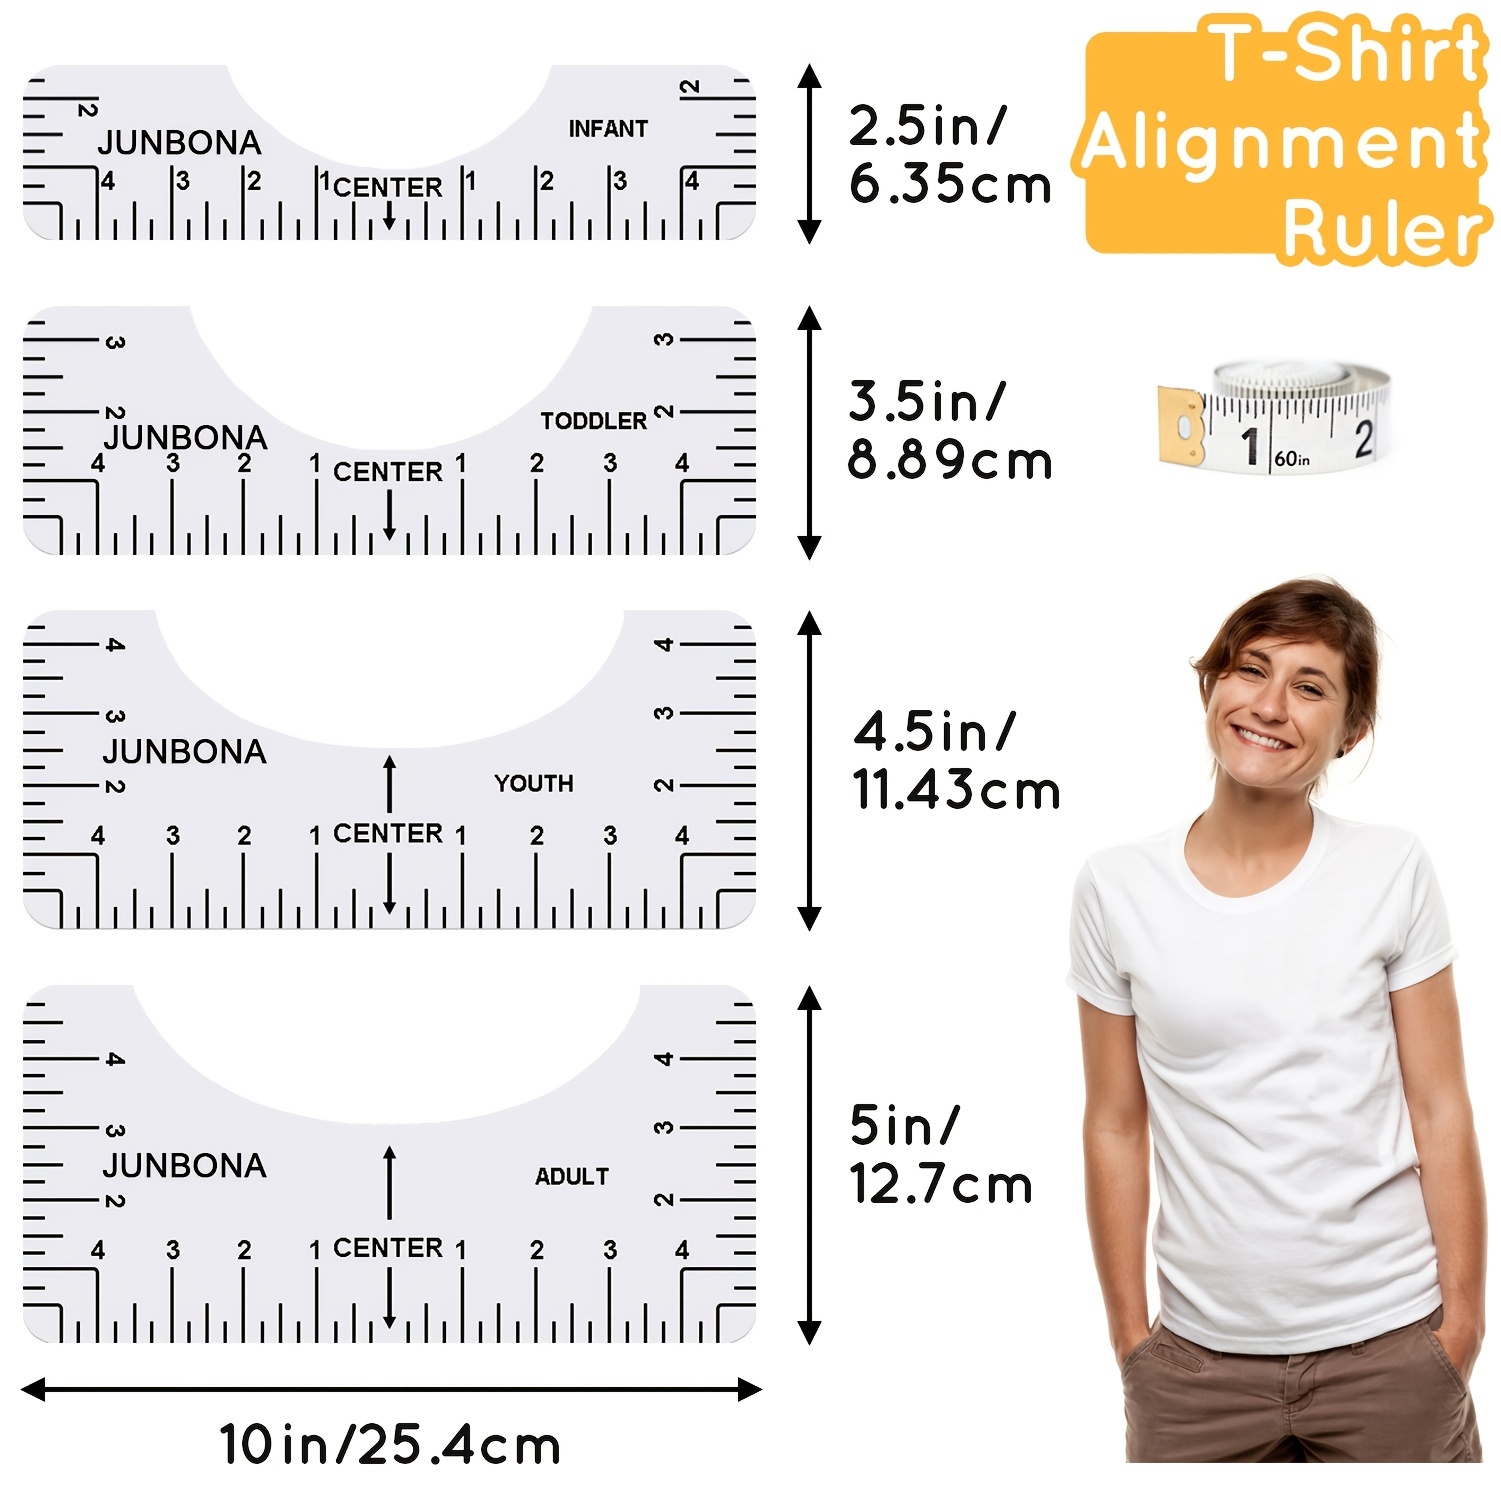  Karpoulra Tshirt Ruler Guide for Vinyl Alignment